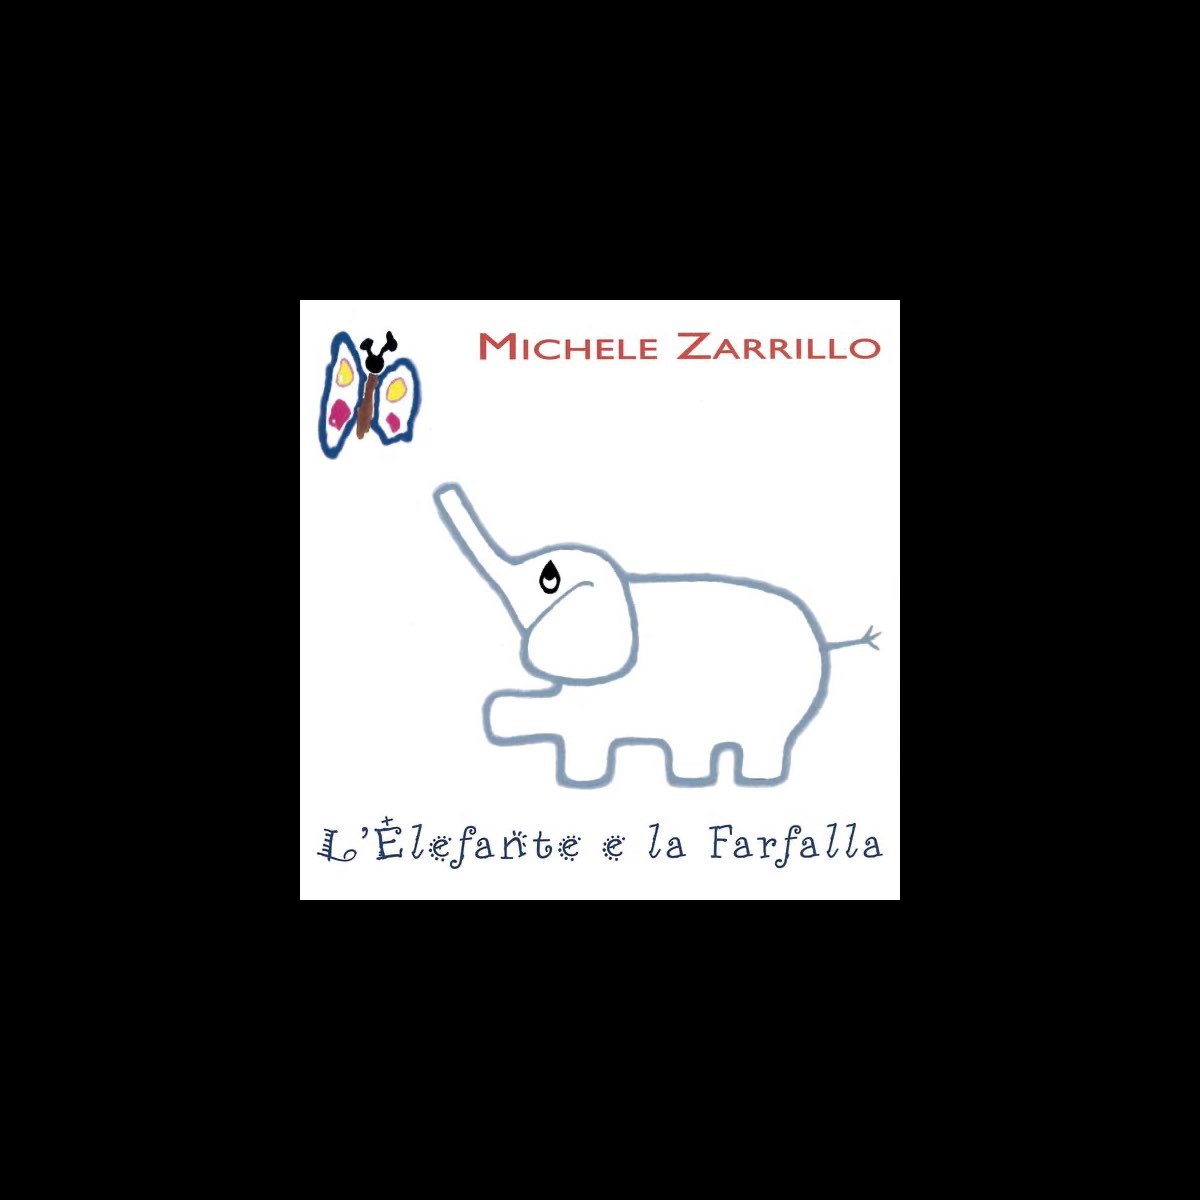 L'elefante e la farfalla by Michele Zarrillo on Apple Music